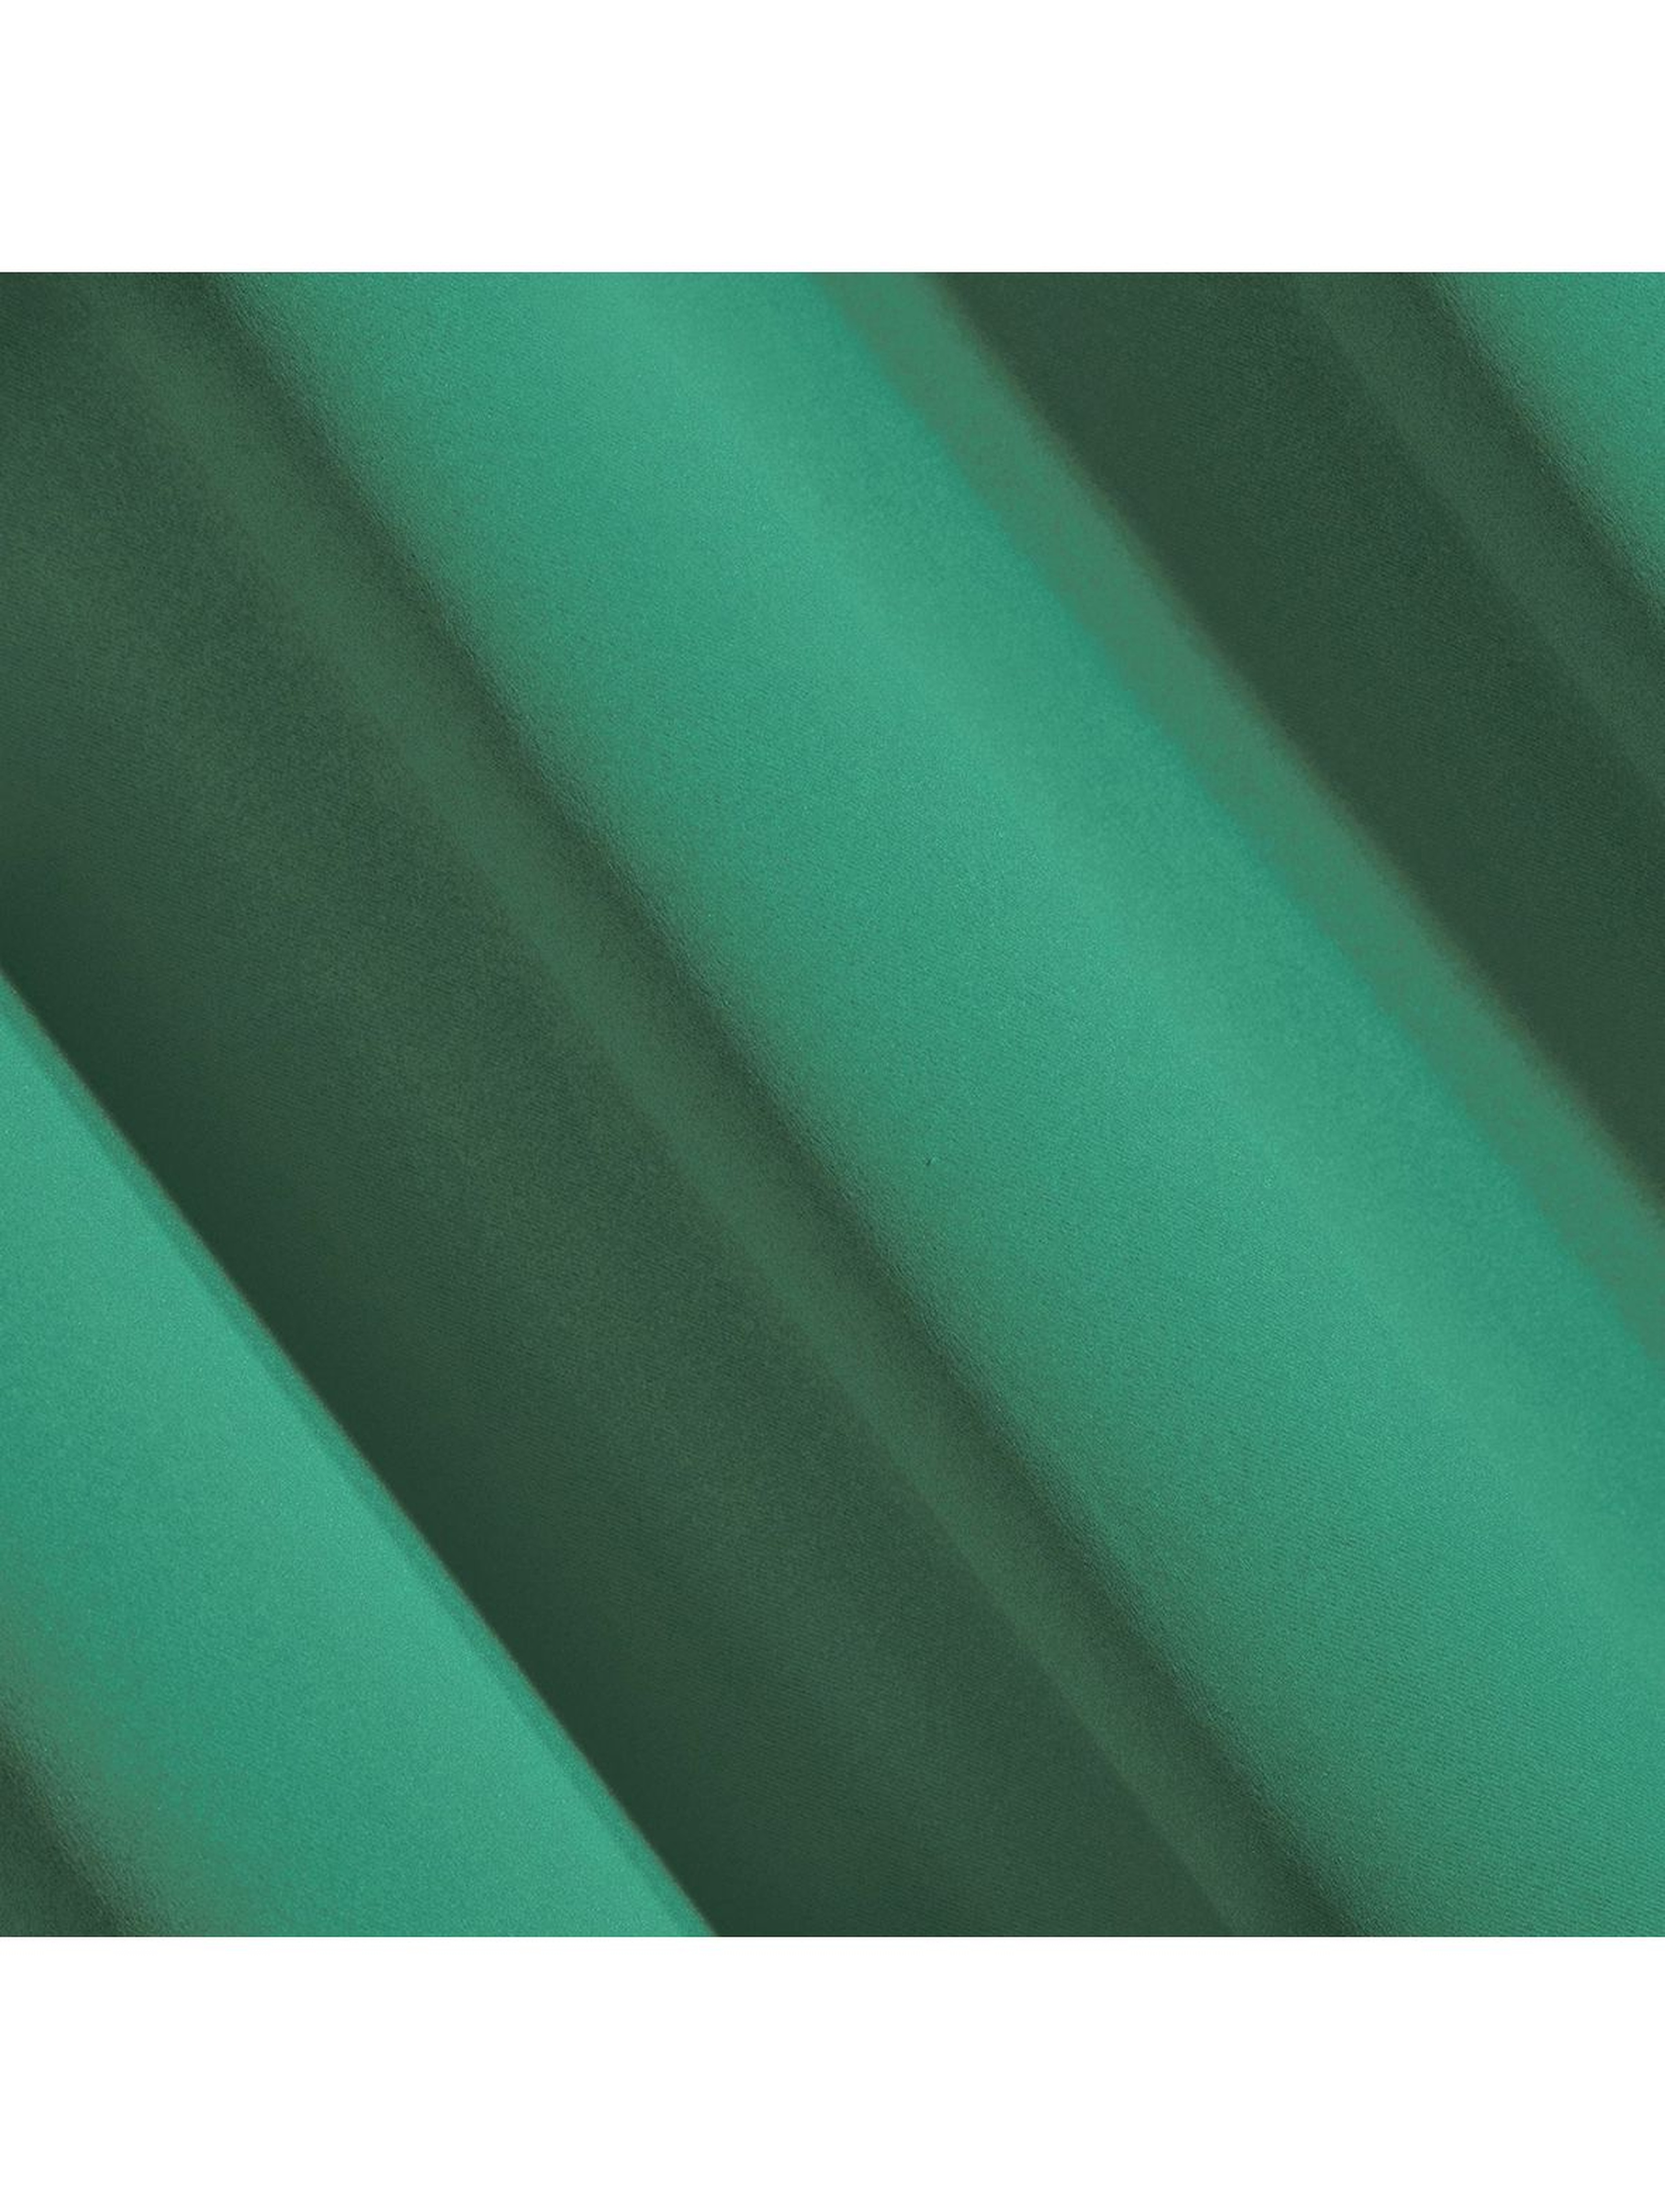 Zasłona jednokolorowa - zielona - 135x250cm